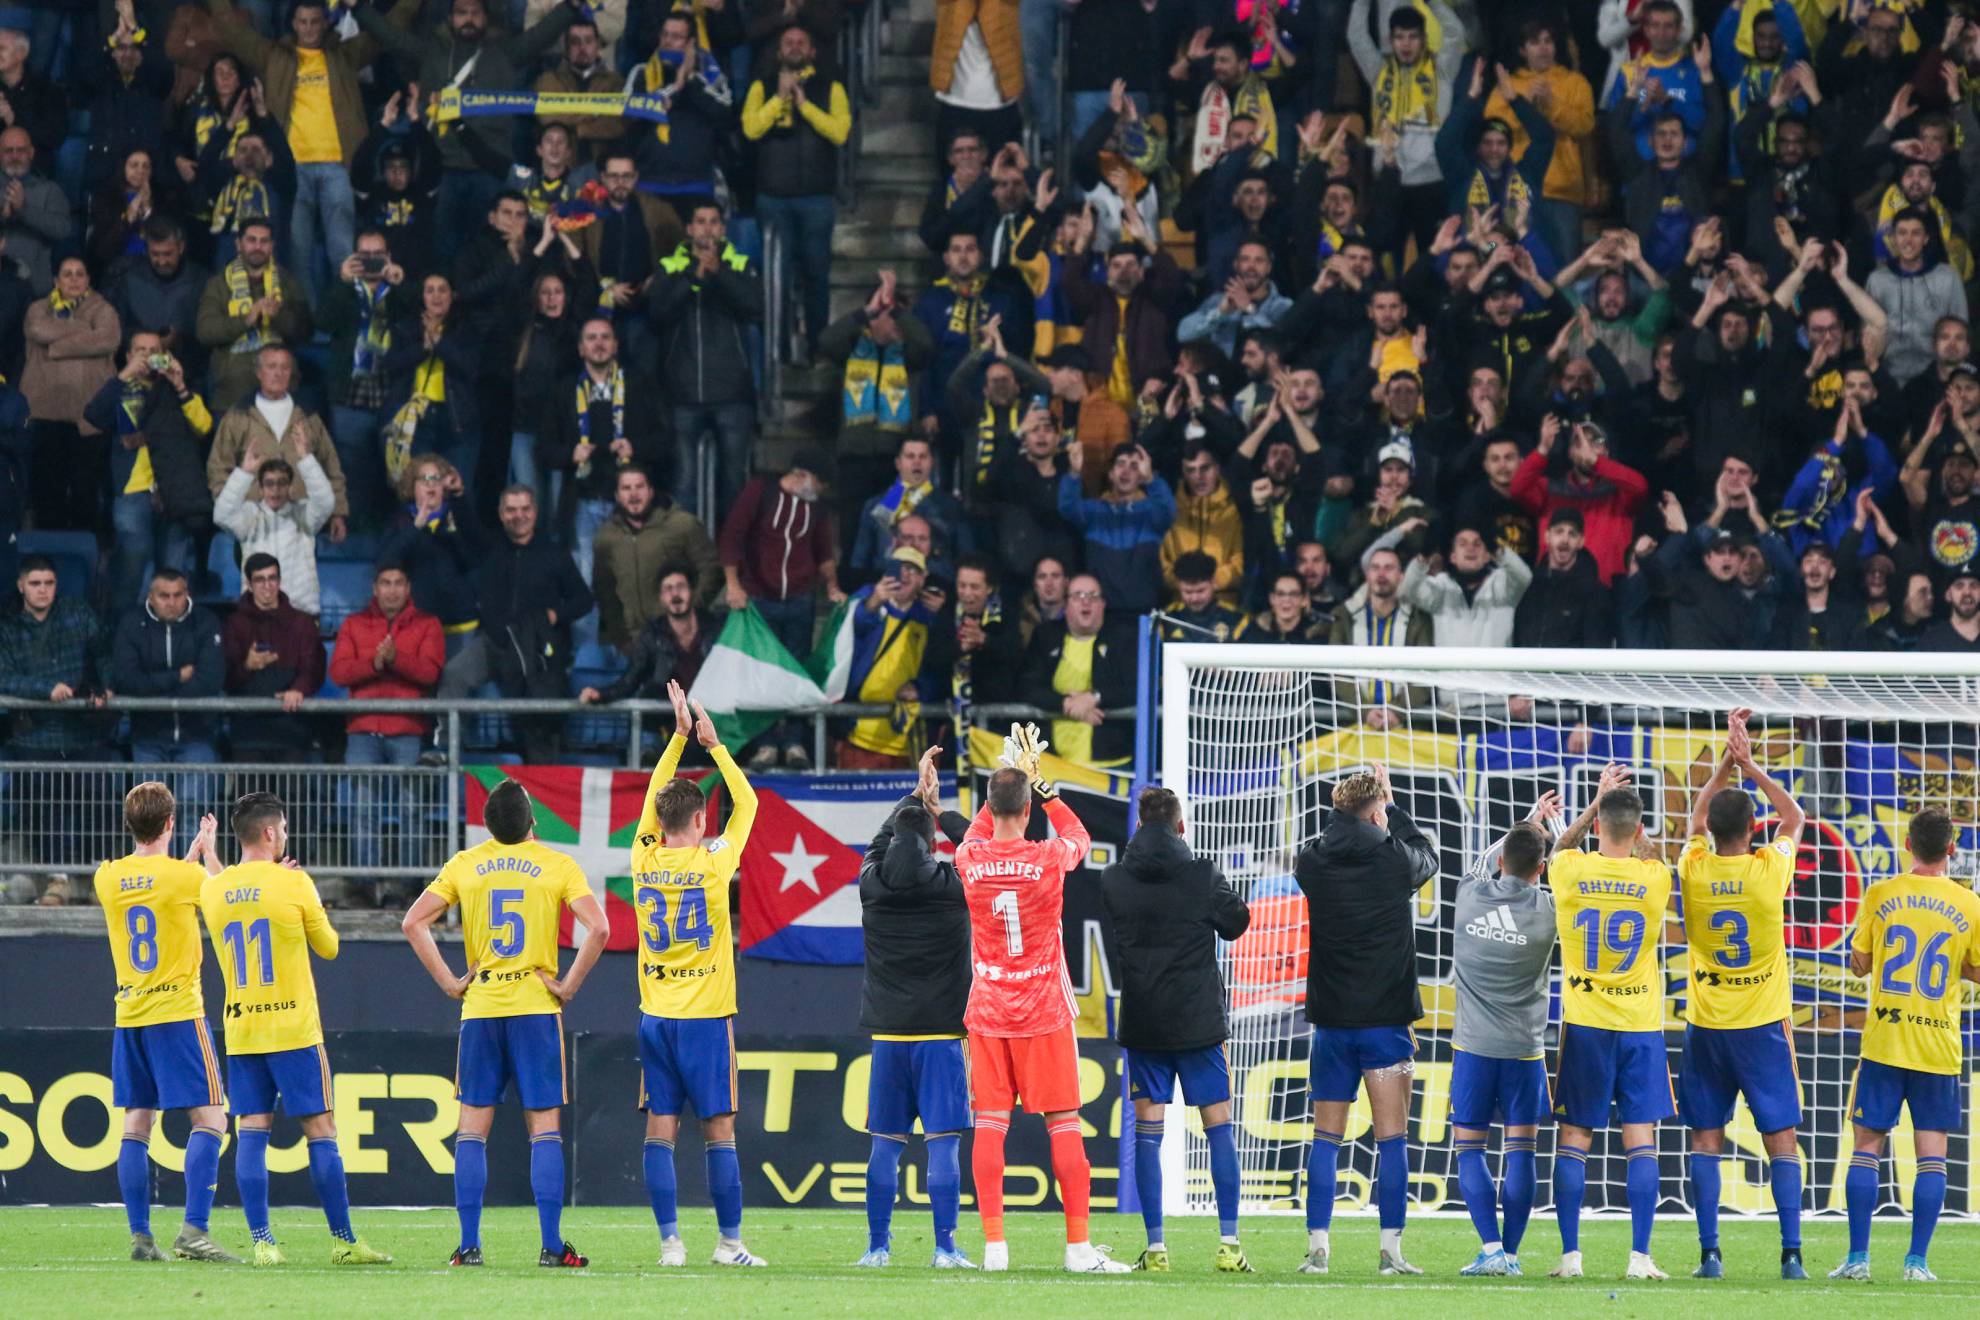 La plantilla del Cádiz saluda a su afición tras un partido.